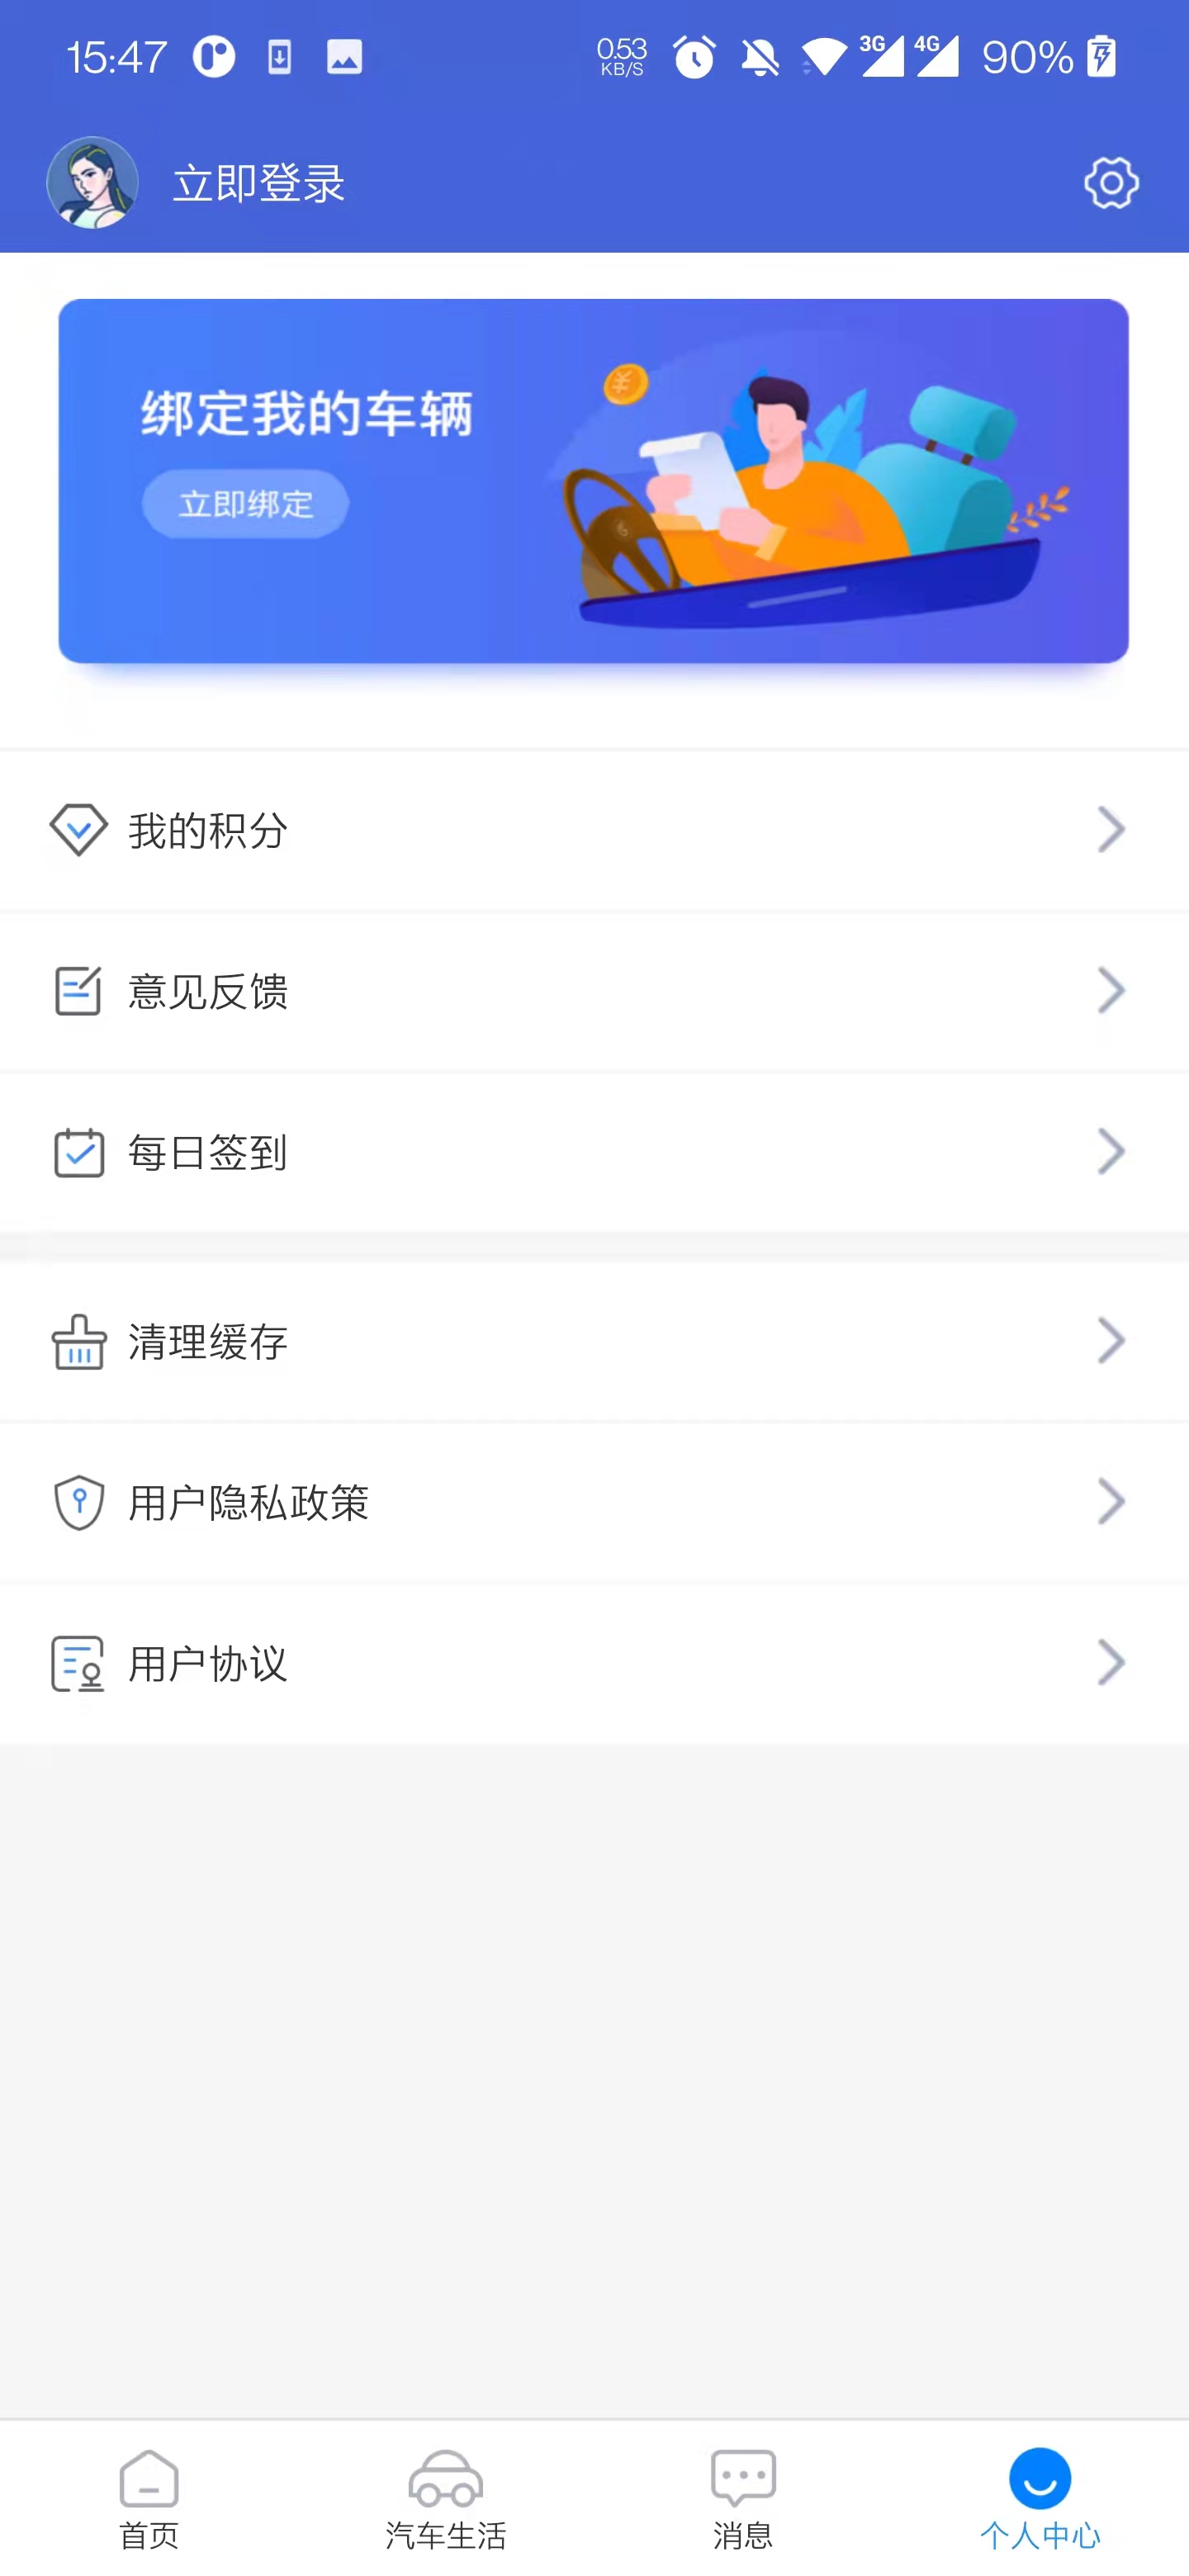 齐鲁通高速e行app 1